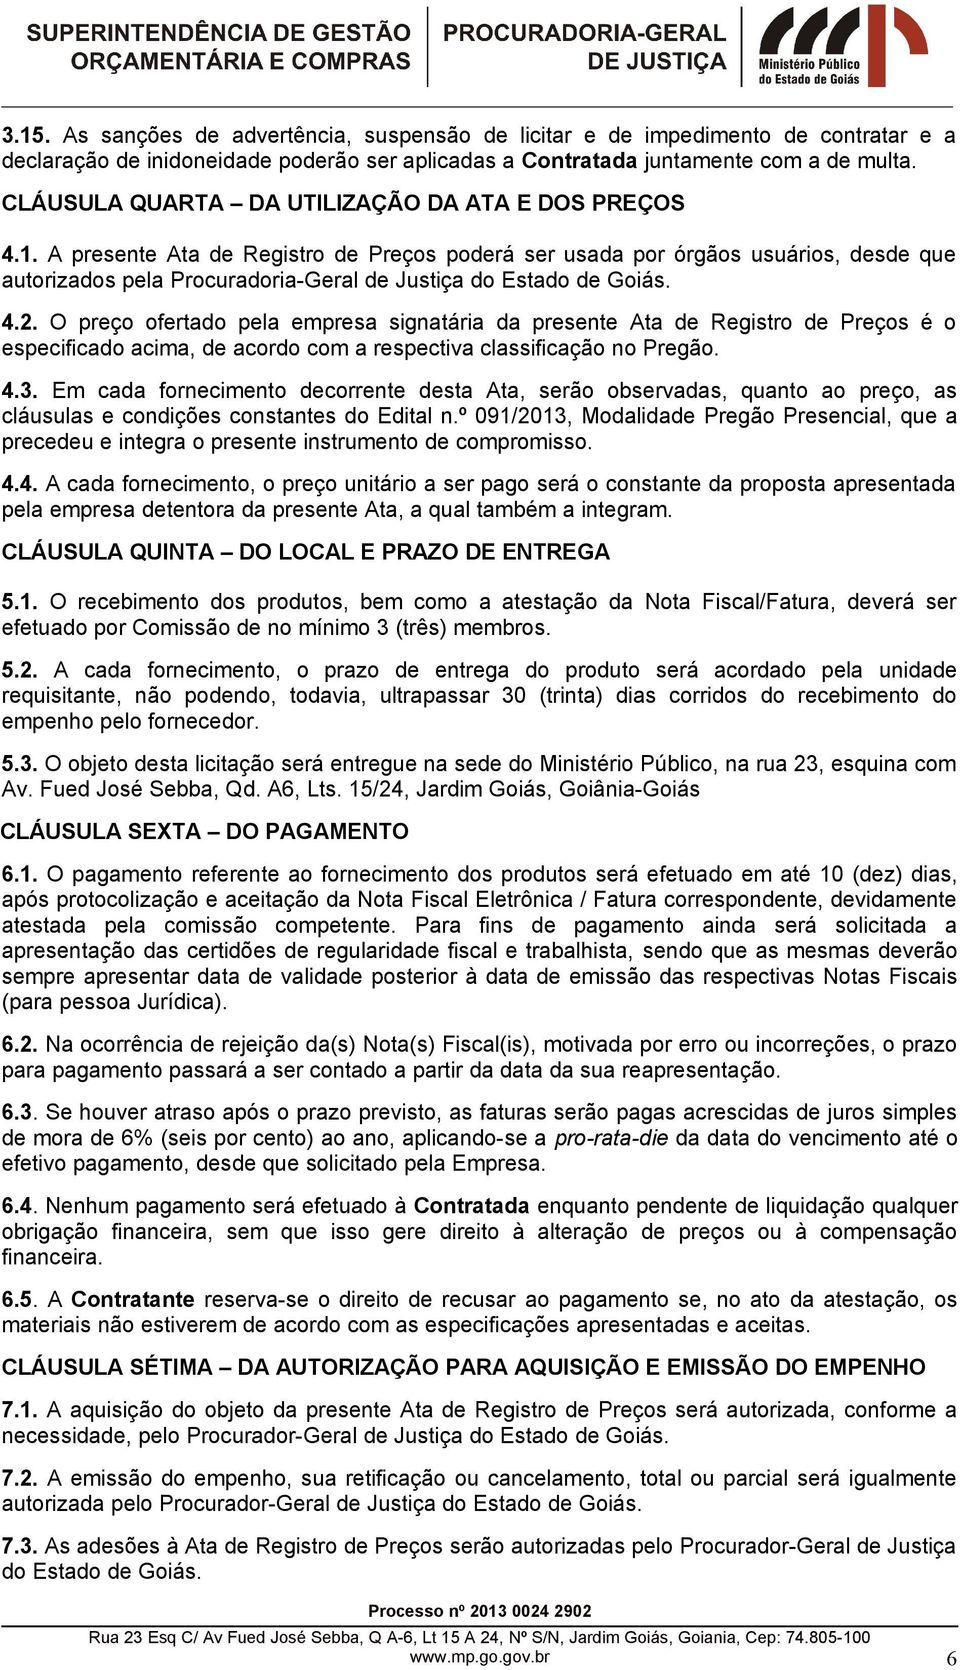 A presente Ata de Registro de Preços poderá ser usada por órgãos usuários, desde que autorizados pela Procuradoria-Geral de Justiça do Estado de Goiás. 4.2.